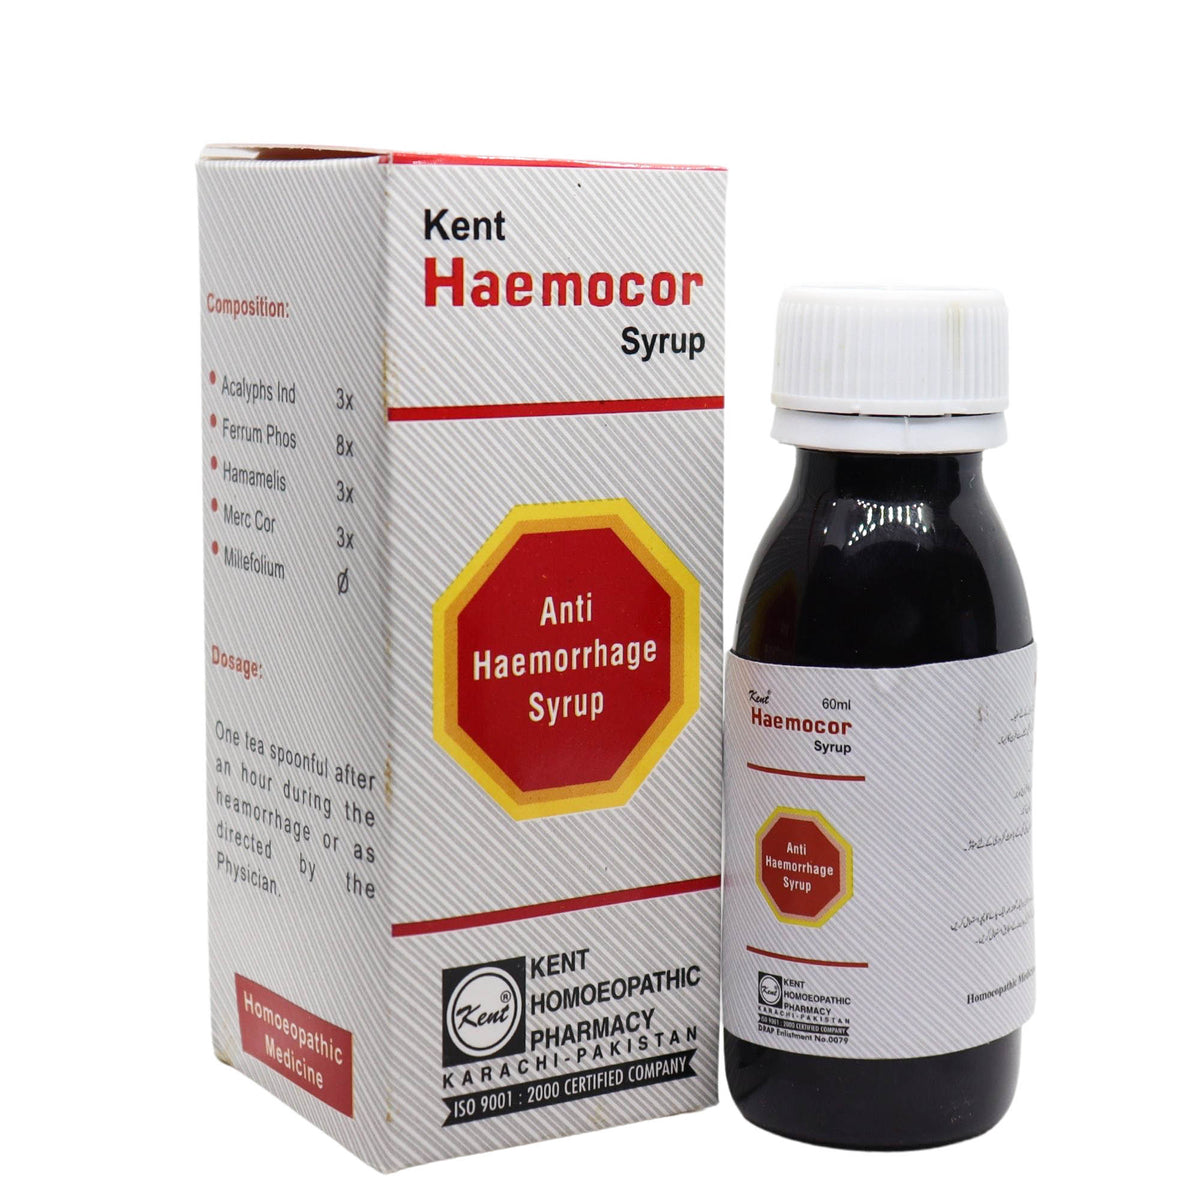 Haemocor Syrup